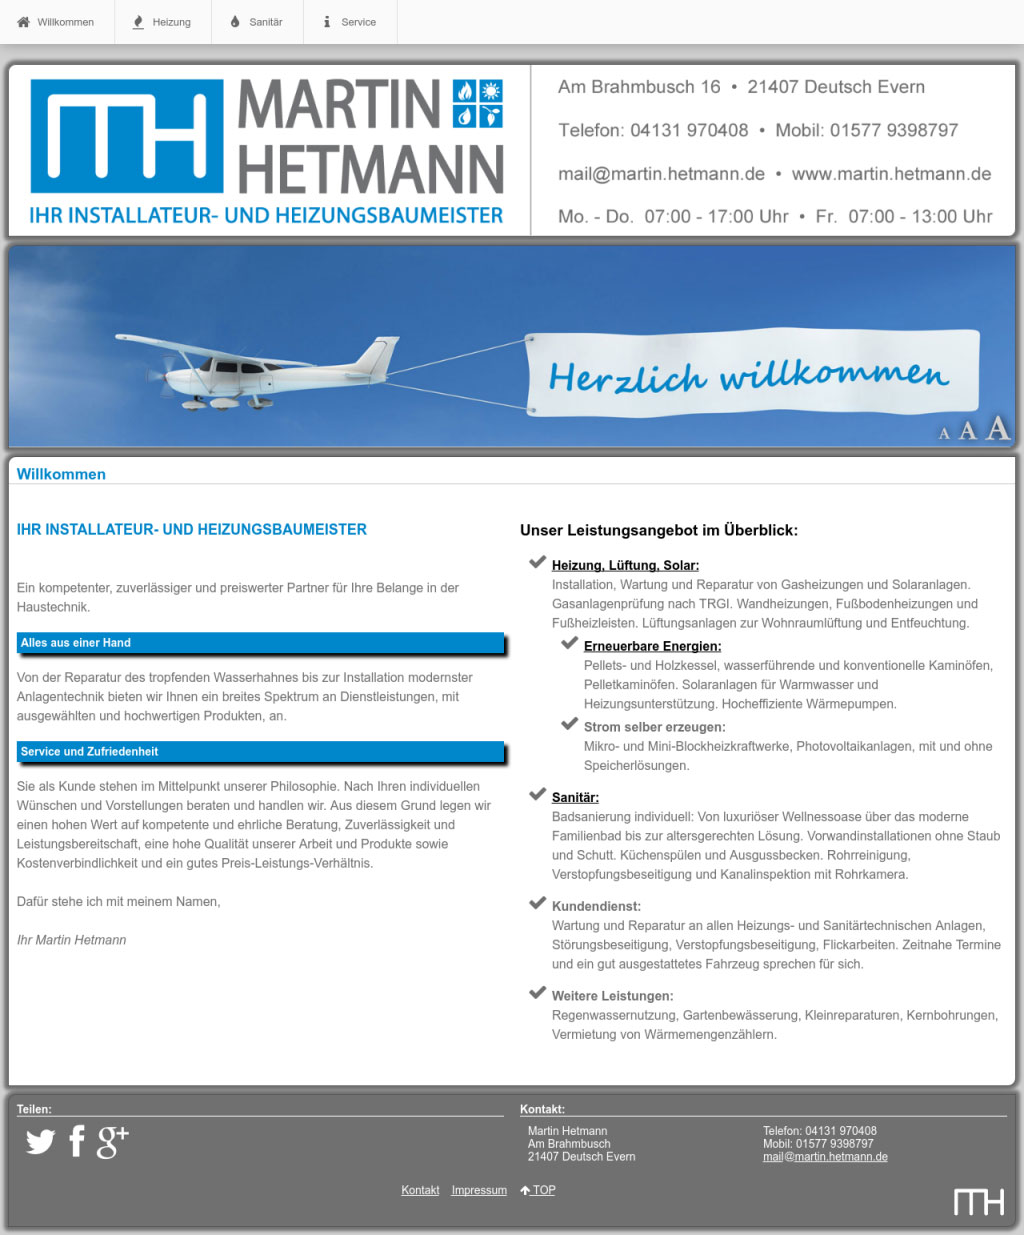 (c) Hetmann.de